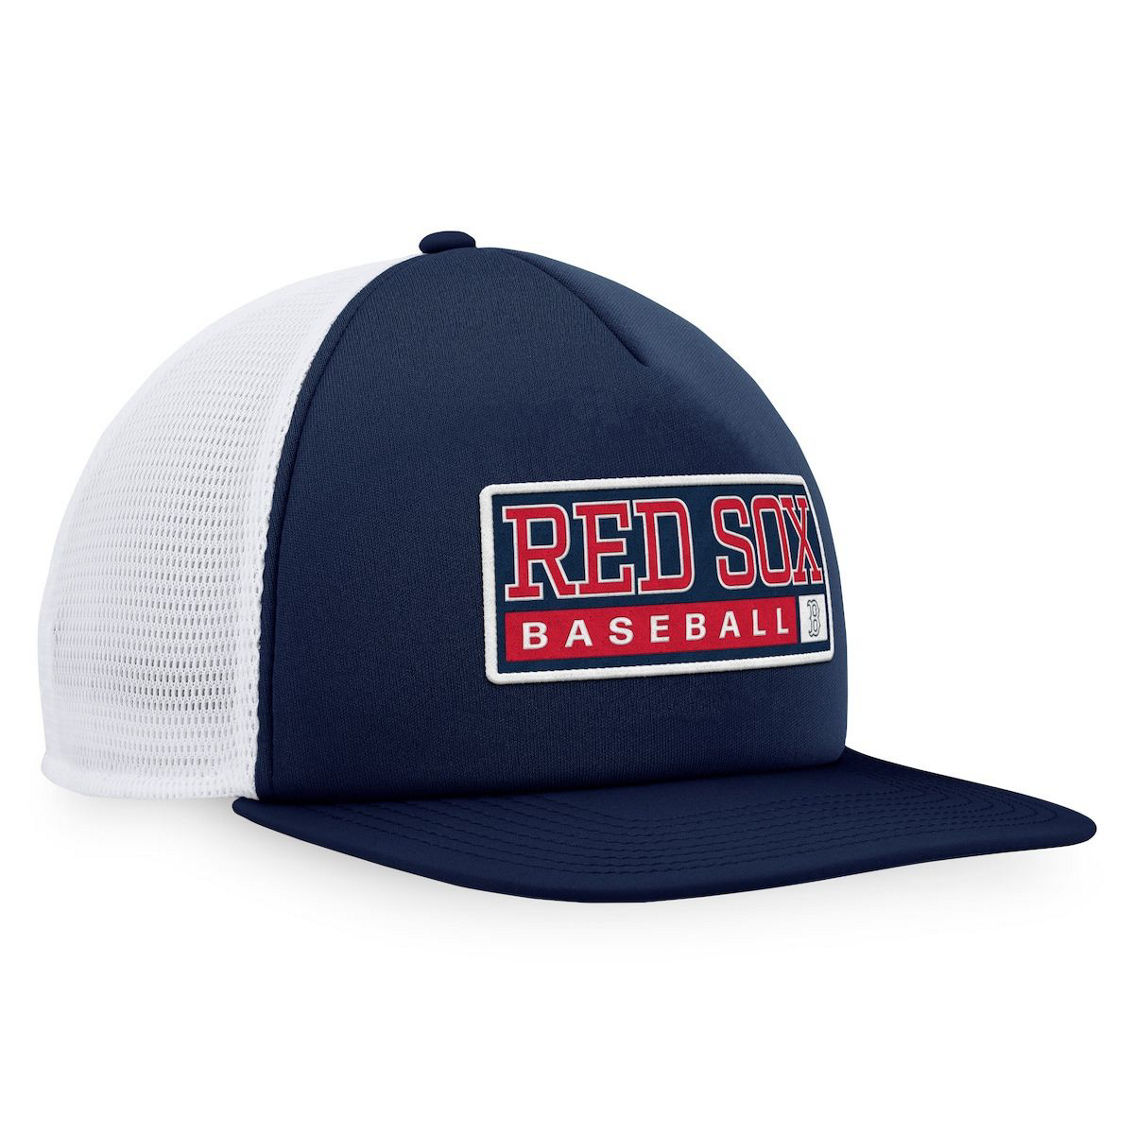 Majestic Men's Navy/White Boston Red Sox Foam Trucker Snapback Hat - Image 4 of 4